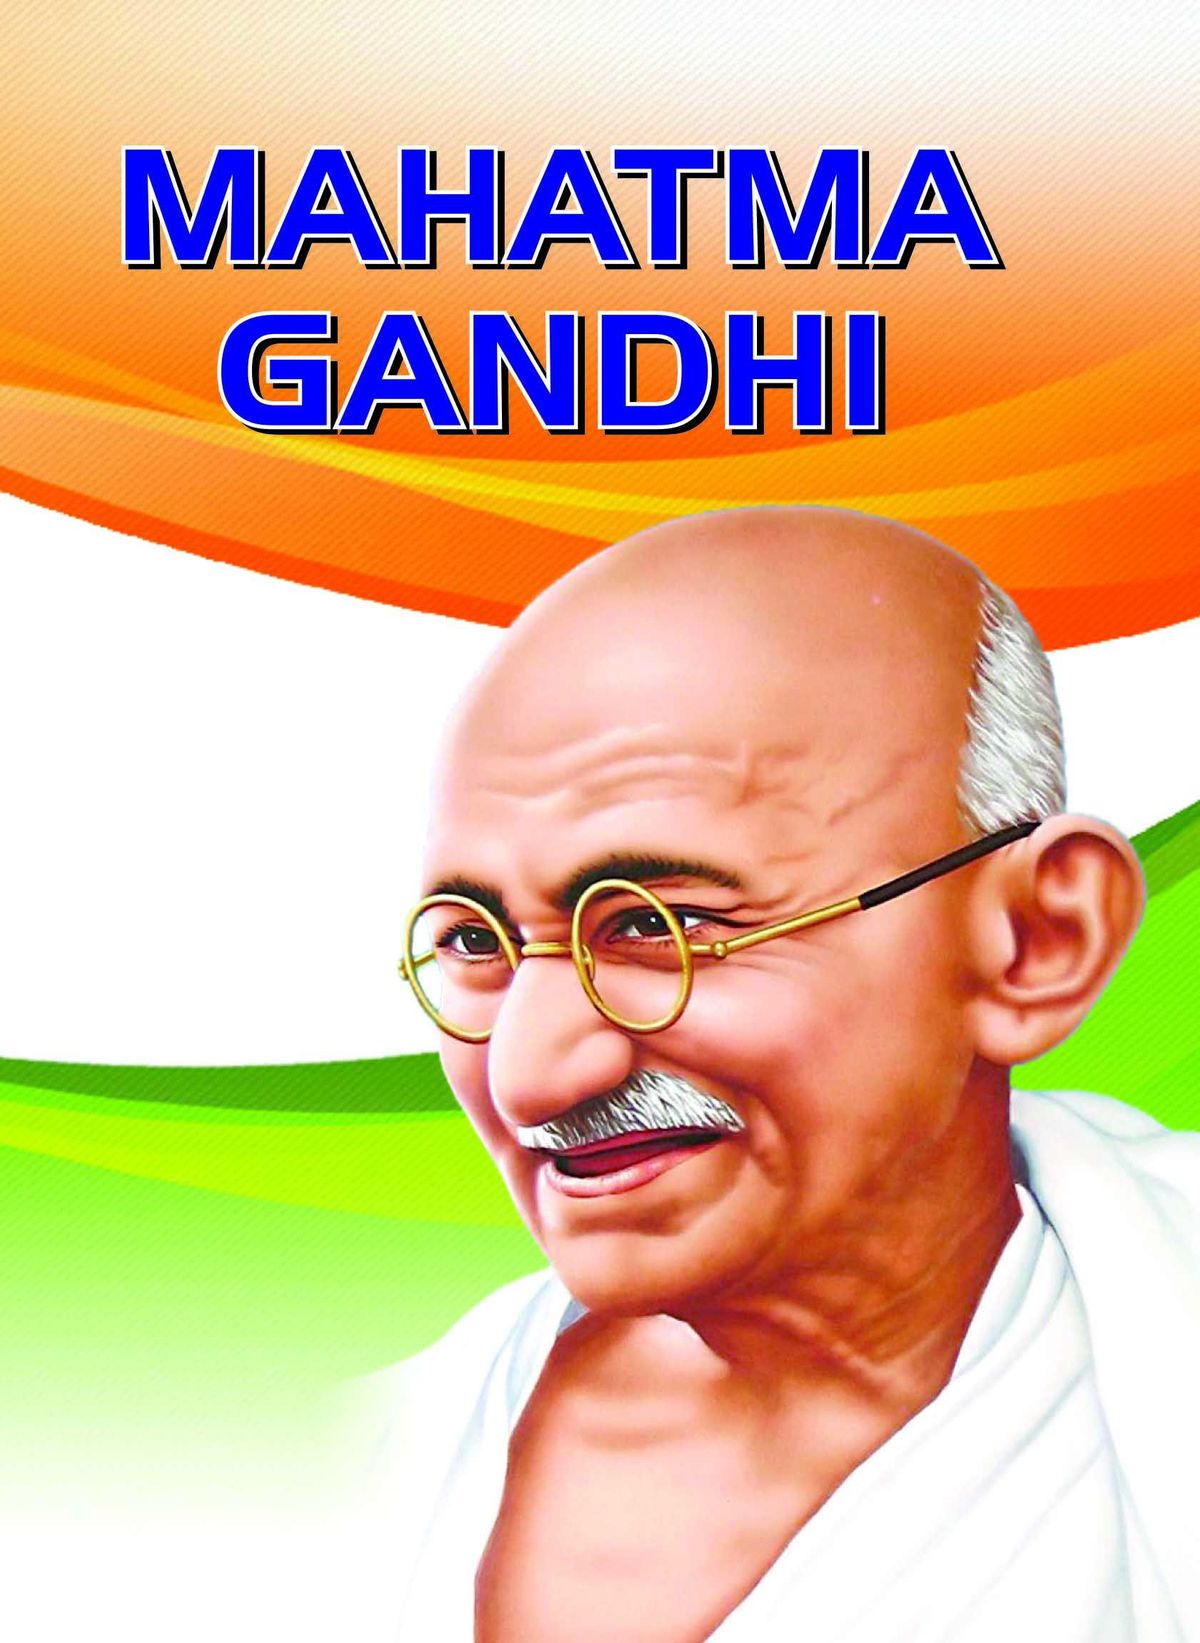 Mahatma Gandhi - 1200x1643 Wallpaper 